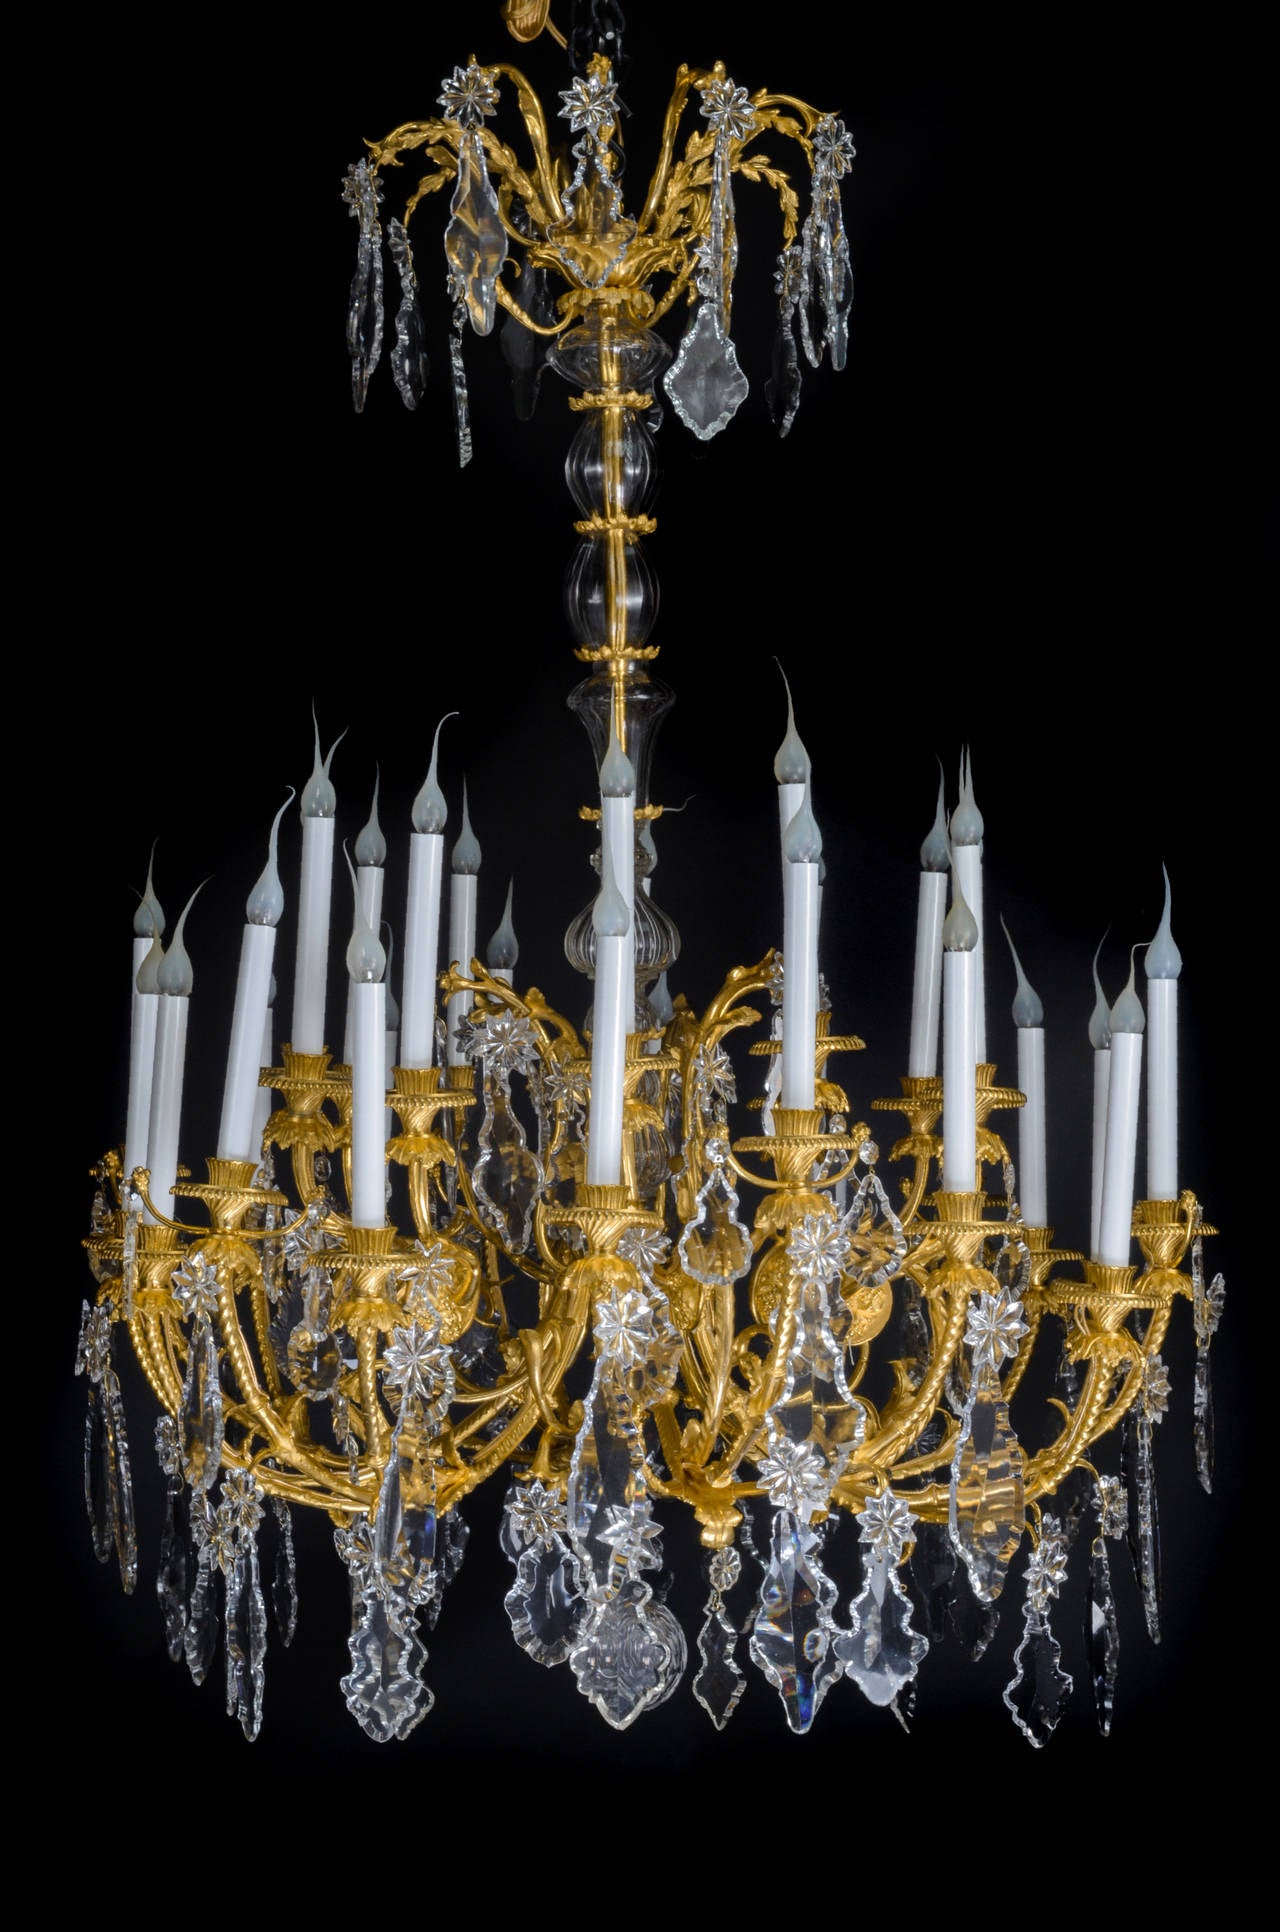 Eine spektakuläre und große antike Französisch Louis XVI-Stil Baccarat vergoldeter Bronze und geschliffenem Kristall Multi-Licht dreistöckigen Kronleuchter von hervorragender Verarbeitung mit zentralen geschliffenem Kristall Welle verschönert, große